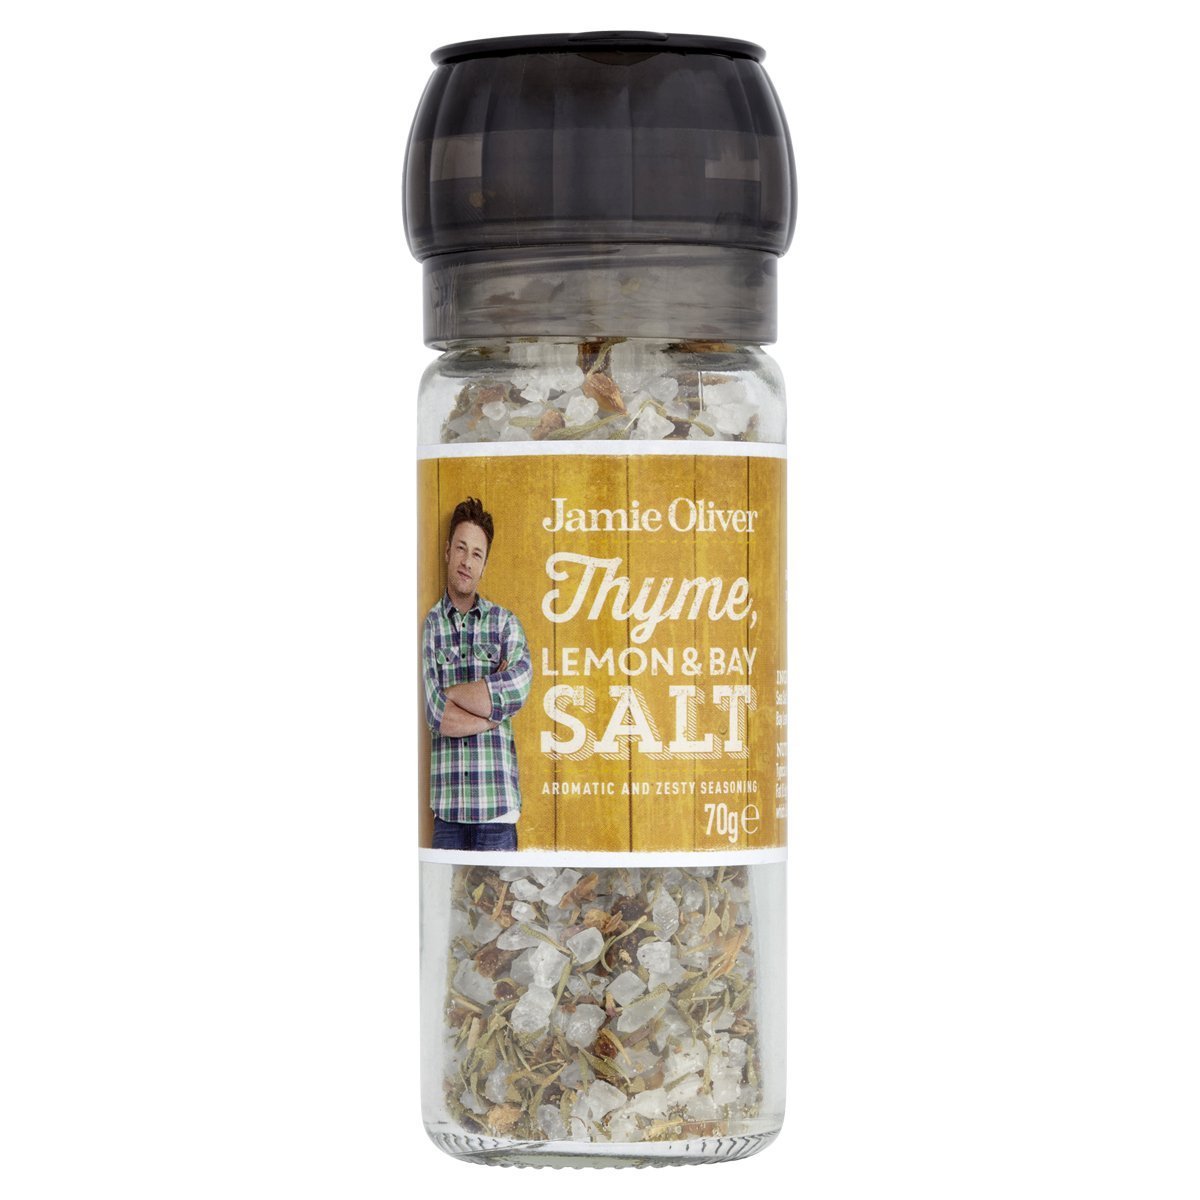 Jamie Oliver Thyme, Lemon & Bay Salt 70g - Italy*